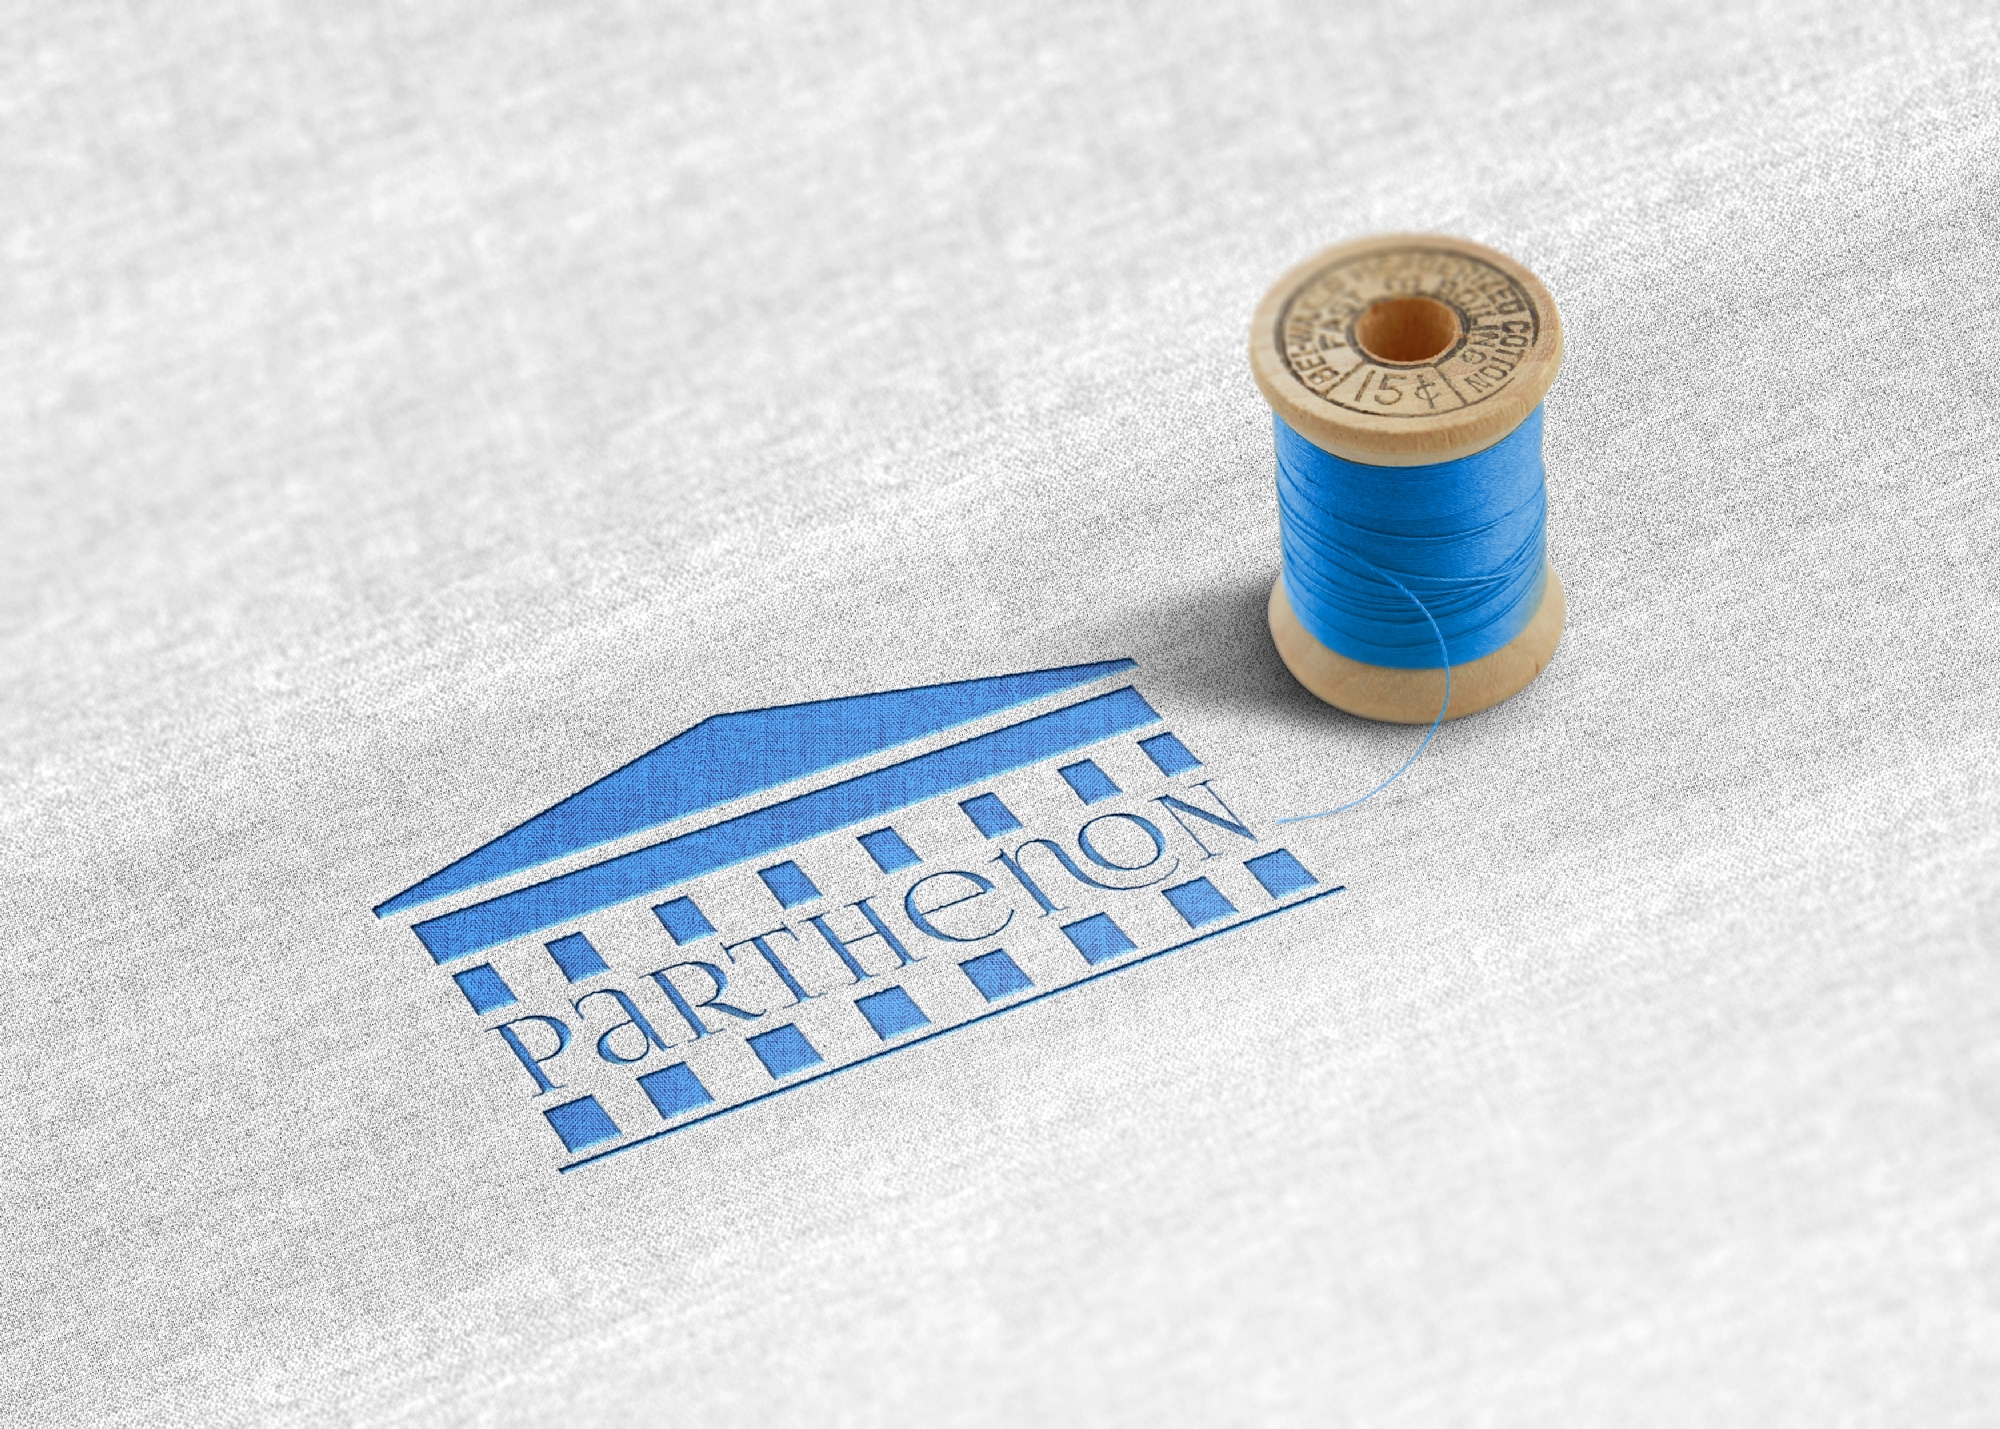 Parthenon Textile Mersin TURKEY, Parthenon Tekstil Ürünleri San. ve Tic. LTD. ŞTİ.